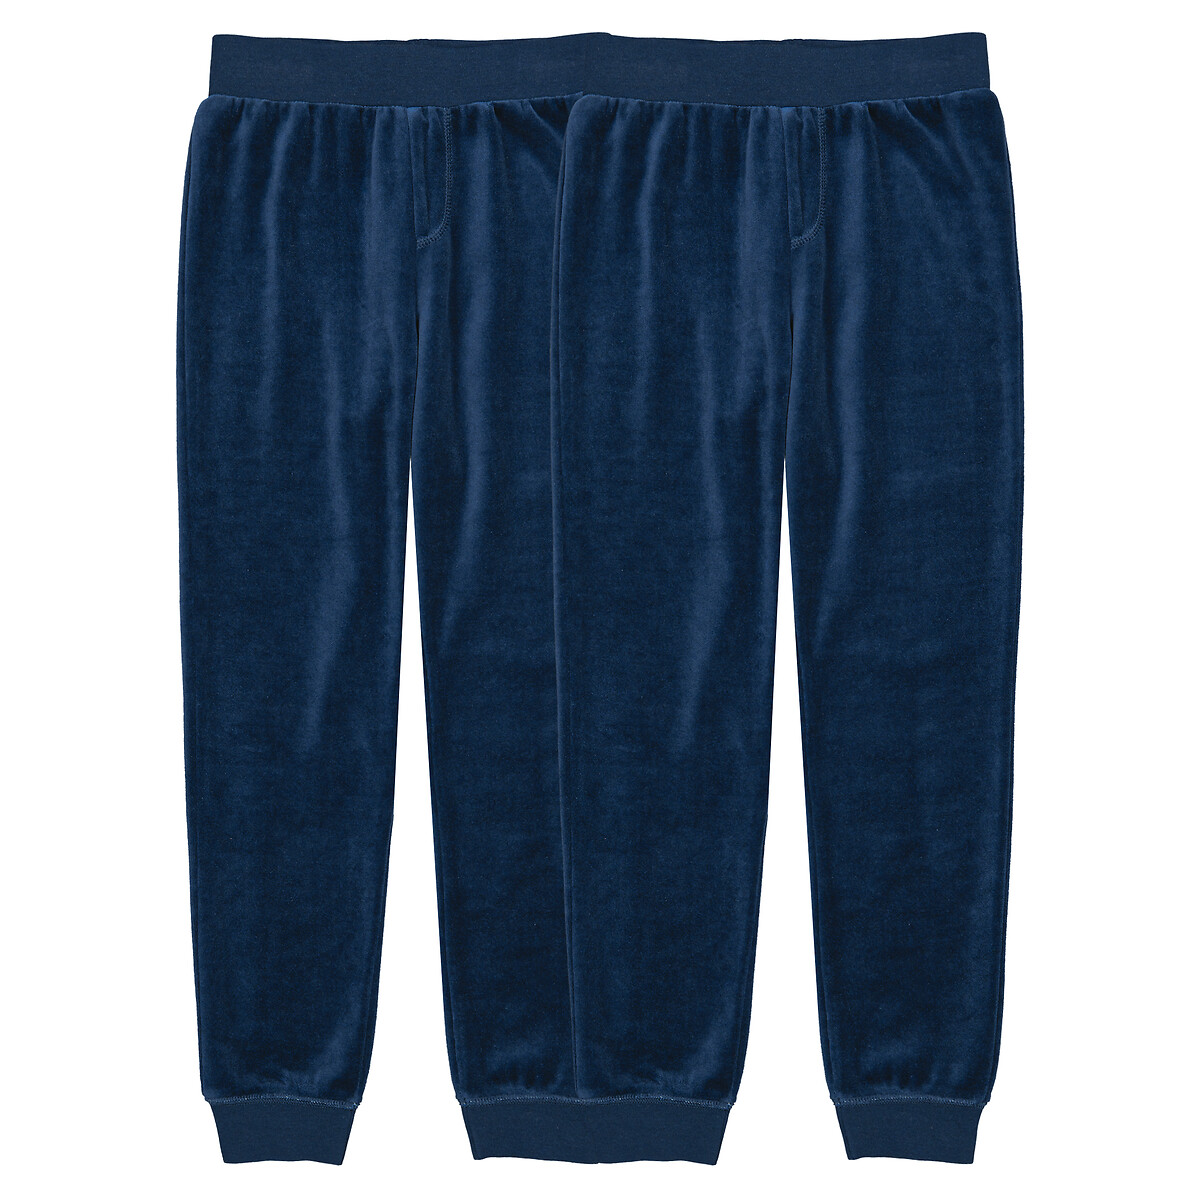 Комплект из двух брюк пижамных из велюра 3 года - 94 см синий комплект из двух футболок с тунисским вырезом 3 года 94 см бежевый